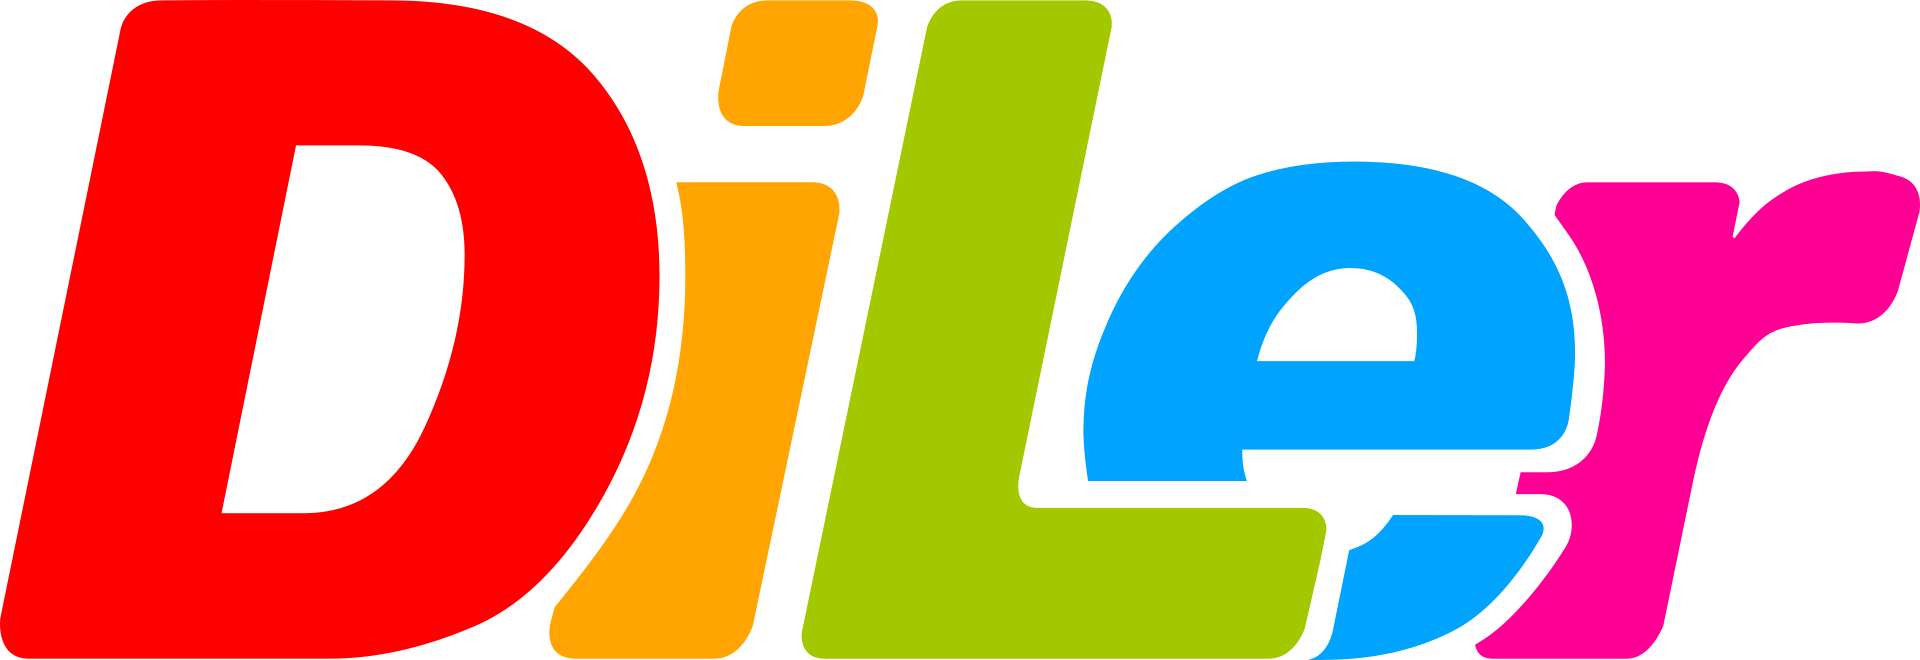 DiLer - Digitale Lernumgebung - Free Open Source Lernplattform - Learning Management System - Logo 1920